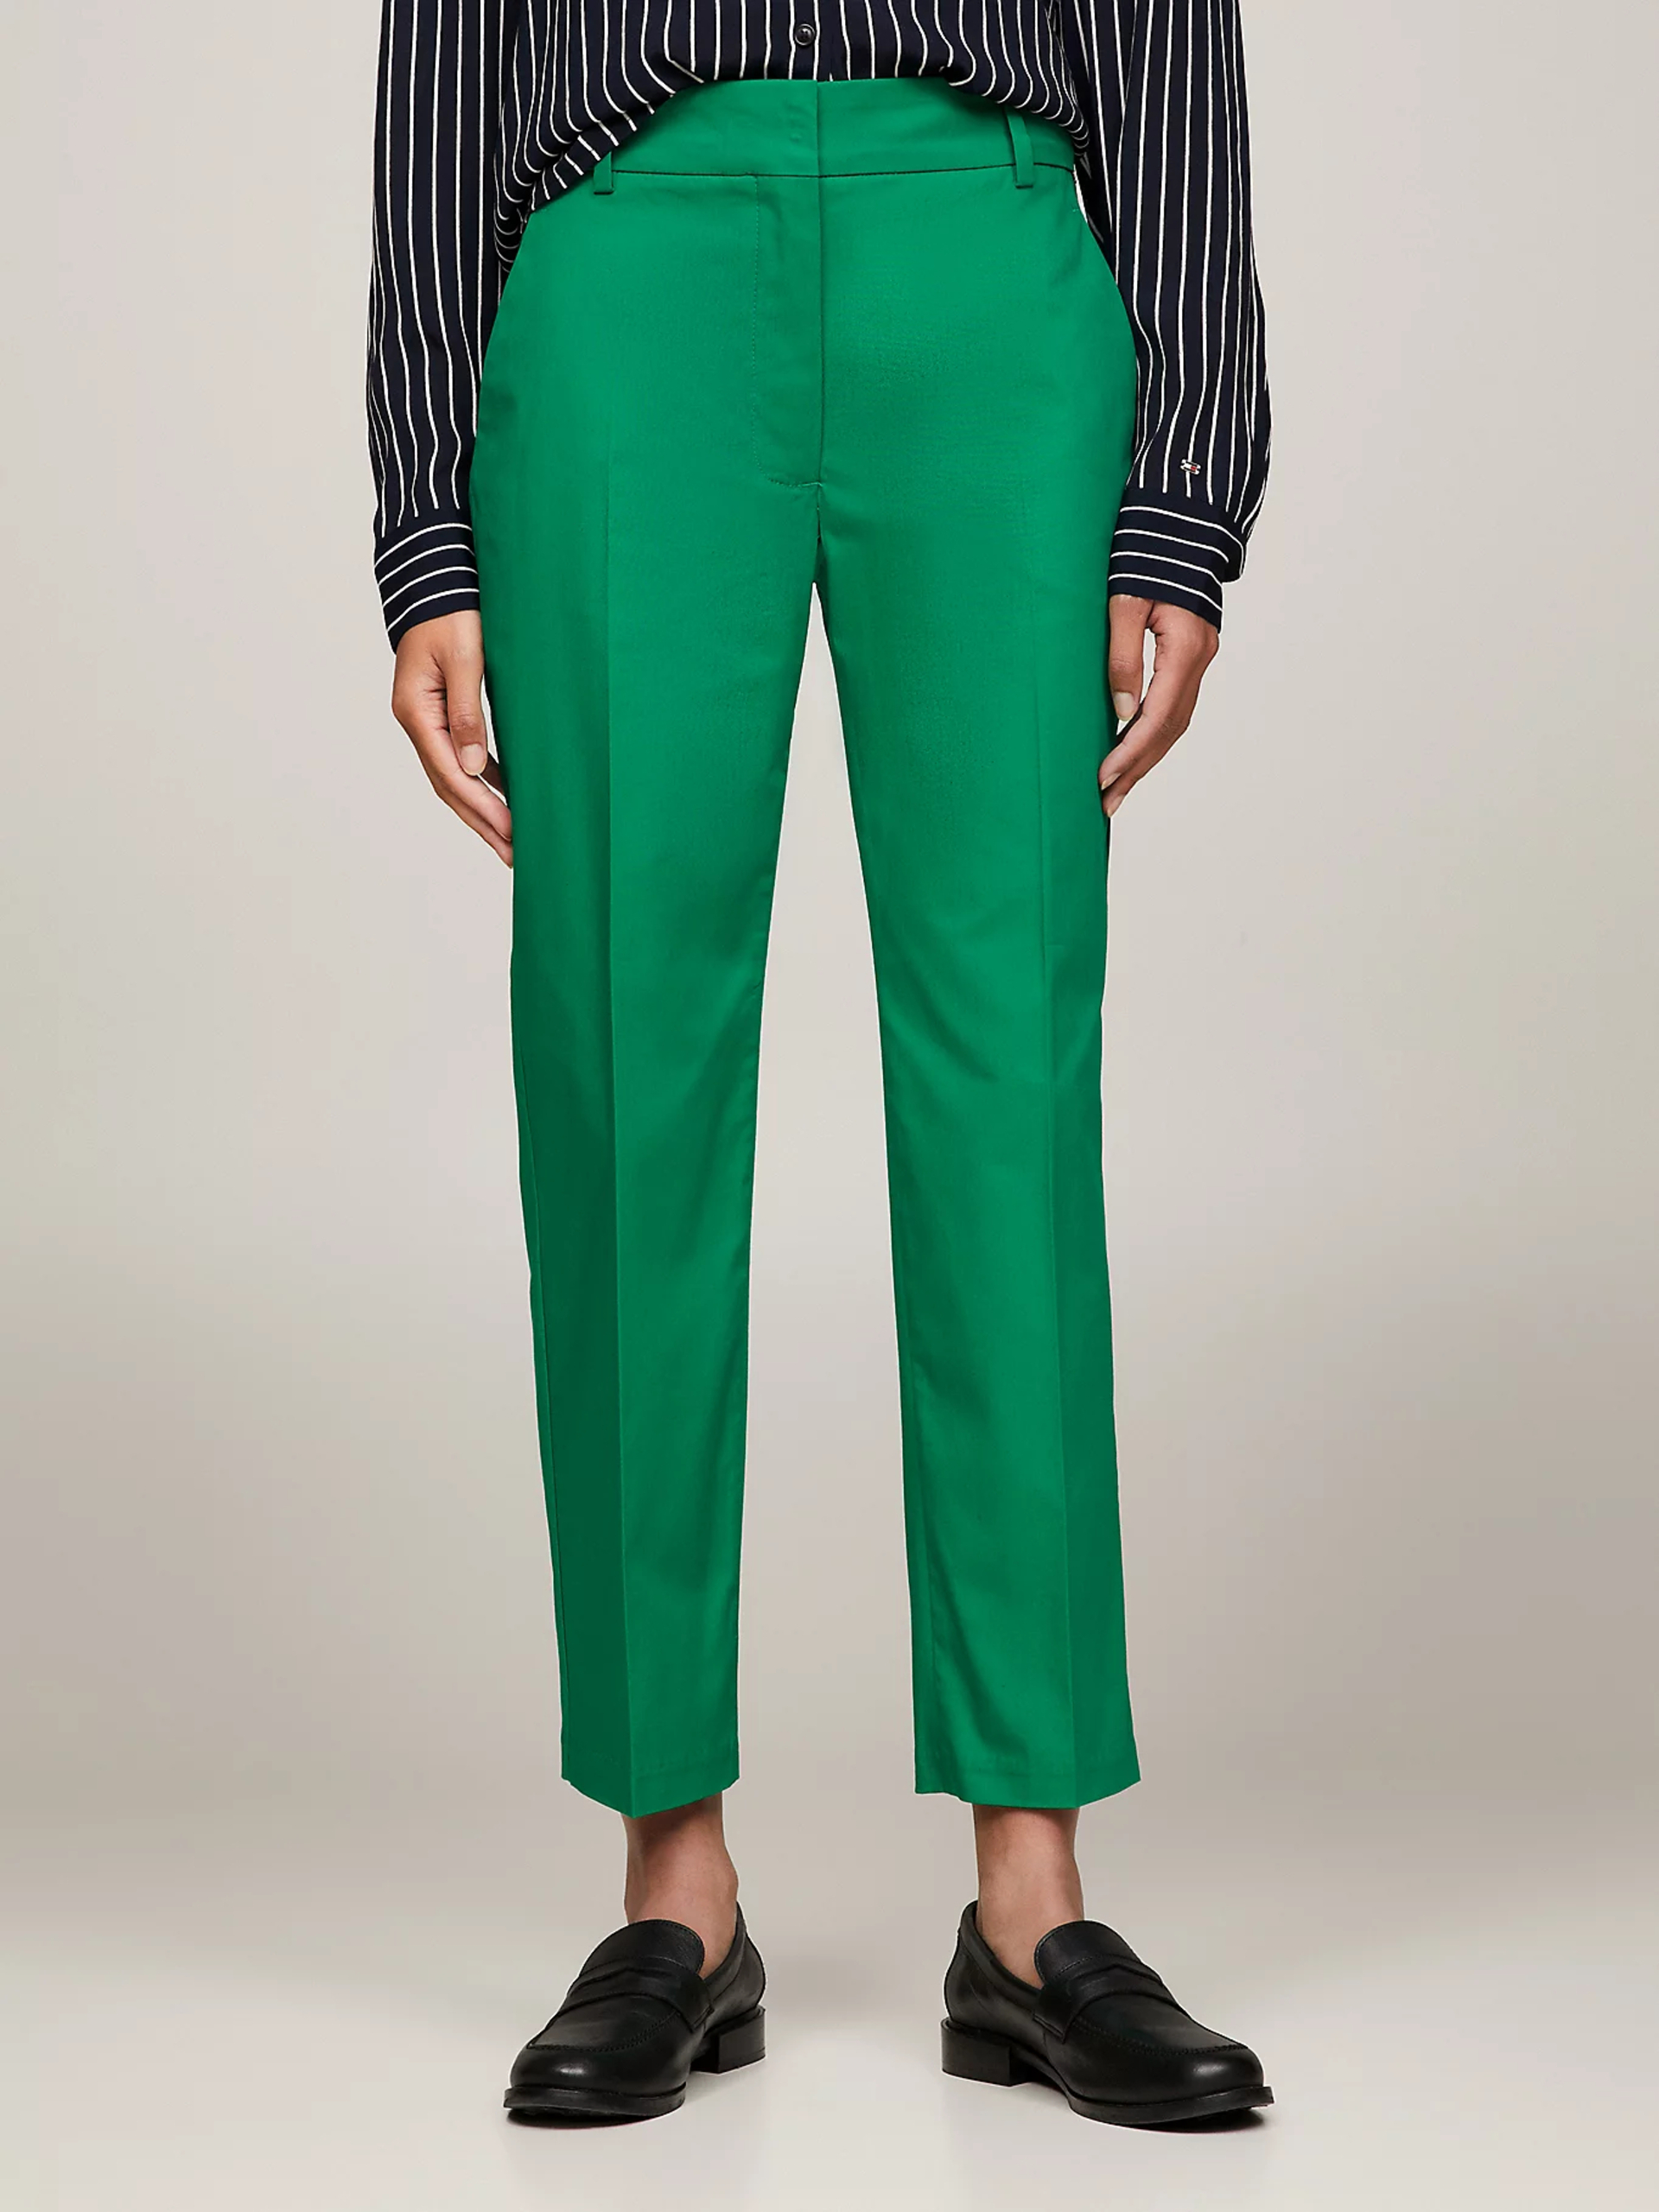 Tommy Hilfiger dámské zelené Chinos kalhoty - 34 (L4B)